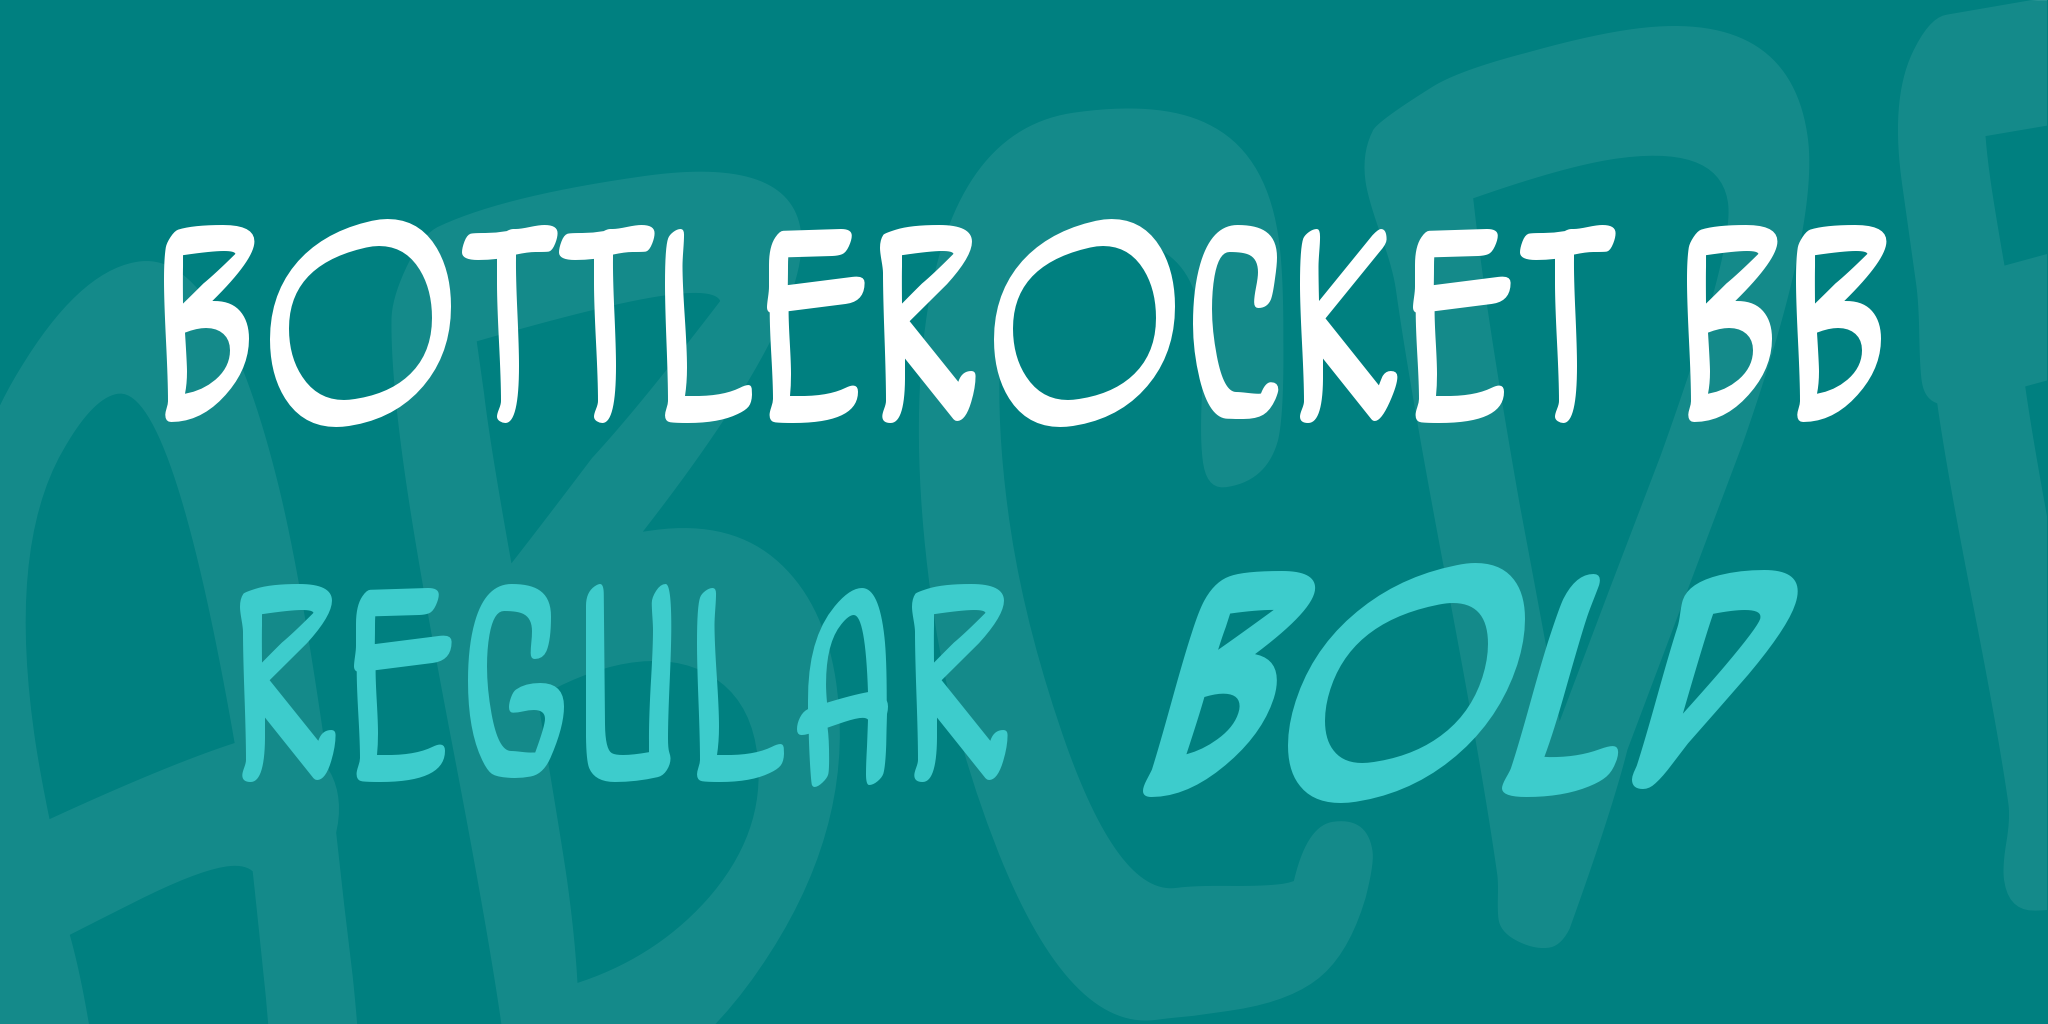 Bottle Rocket Bb